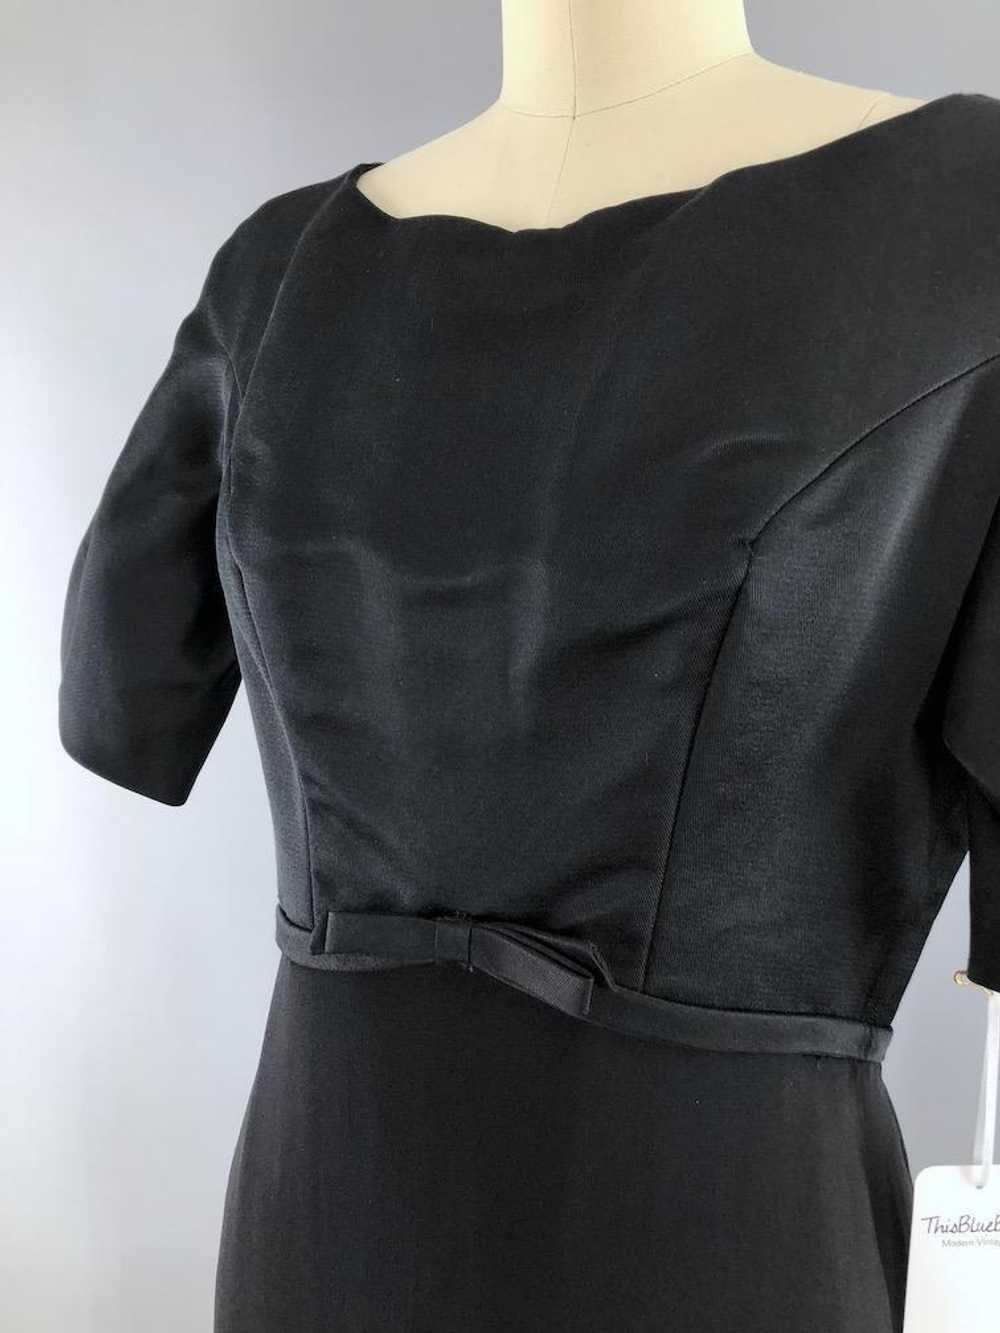 Vintage Black Satin Crepe Cocktail Dress - image 3